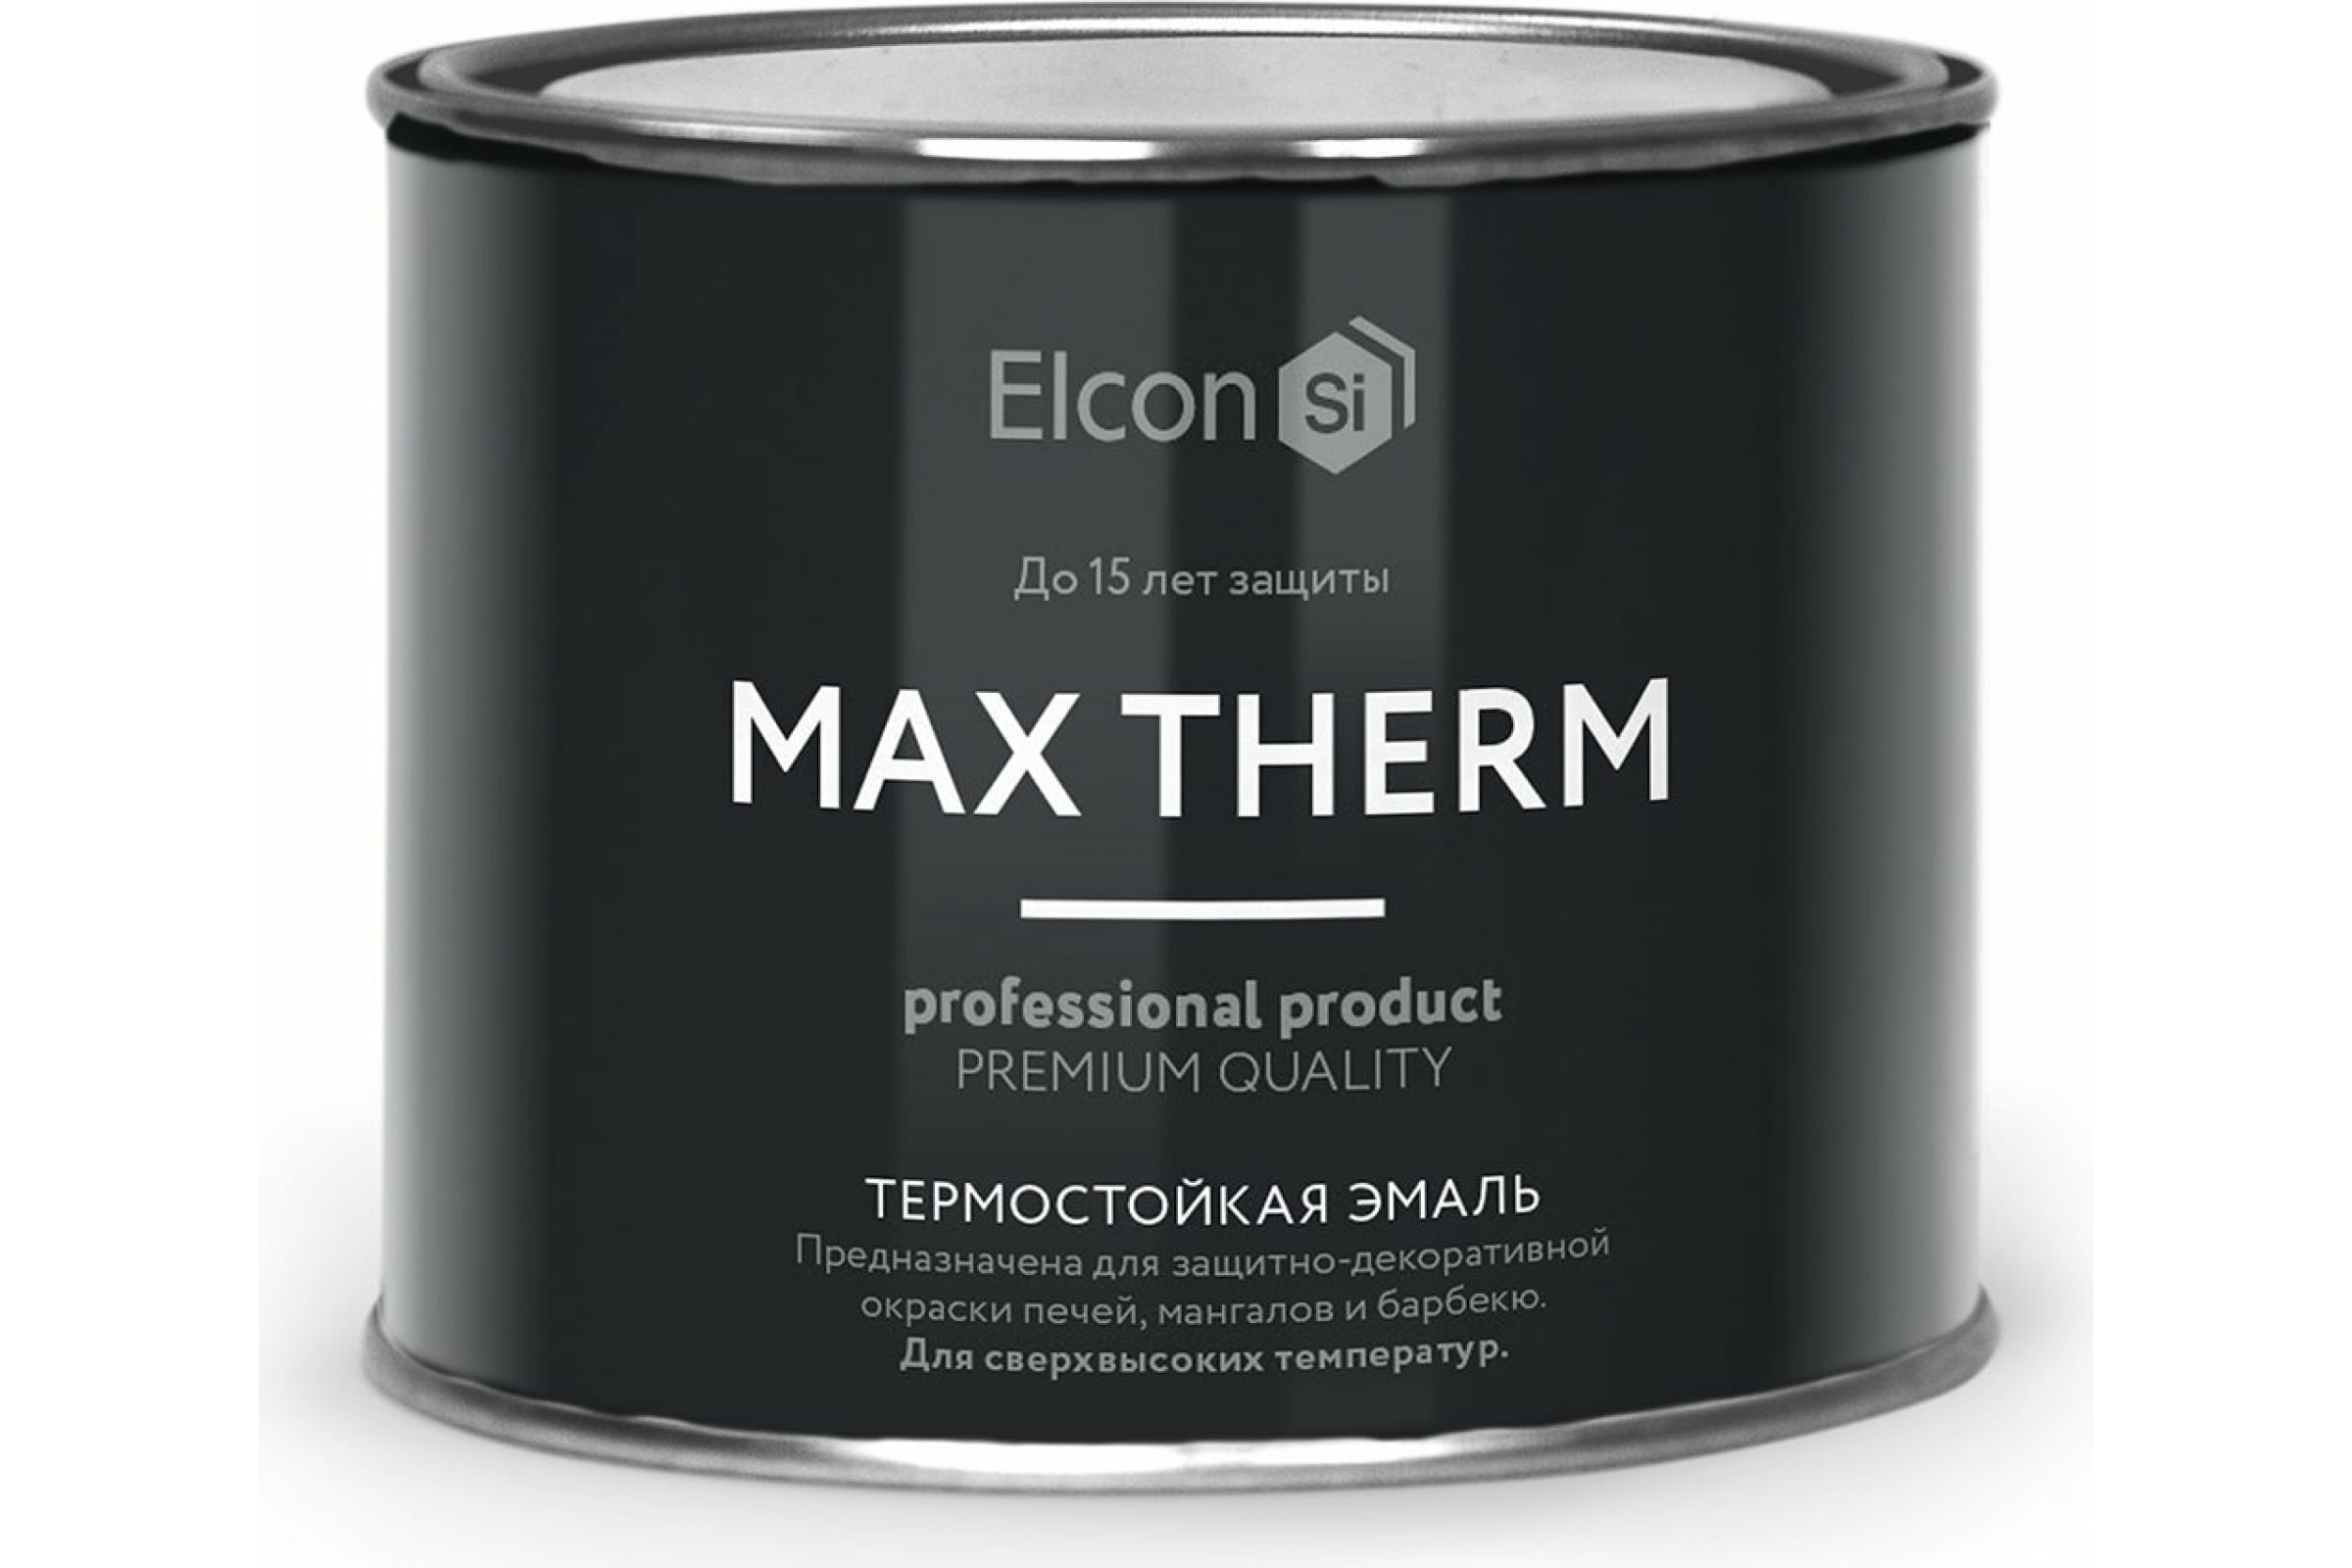 Термостойкая антикоррозионная эмаль Elcon Max Therm до 400 градусов, 0,4 л, бежевая термостойкая антикоррозионная эмаль elcon max therm до 700 градусов 0 4 л зеленая